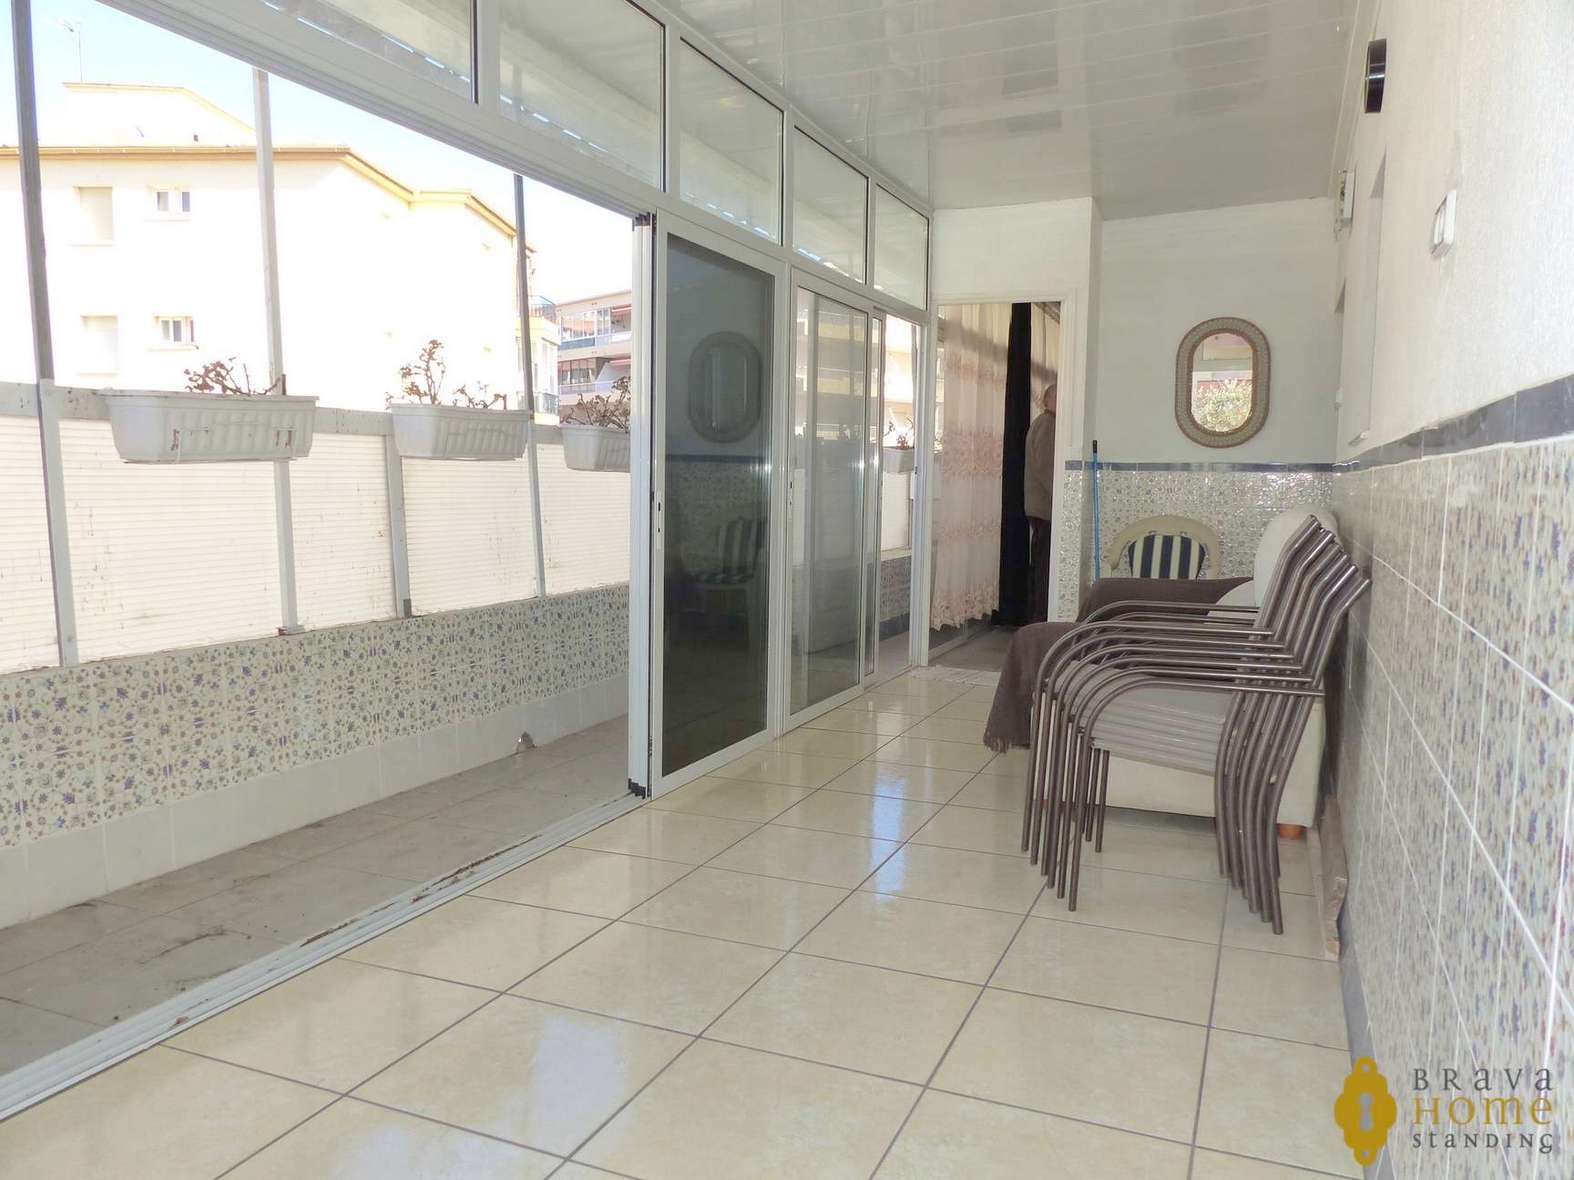 Appartement avec terrasse de 70m2 à 100m de la plage à Rosas - Santa margarita